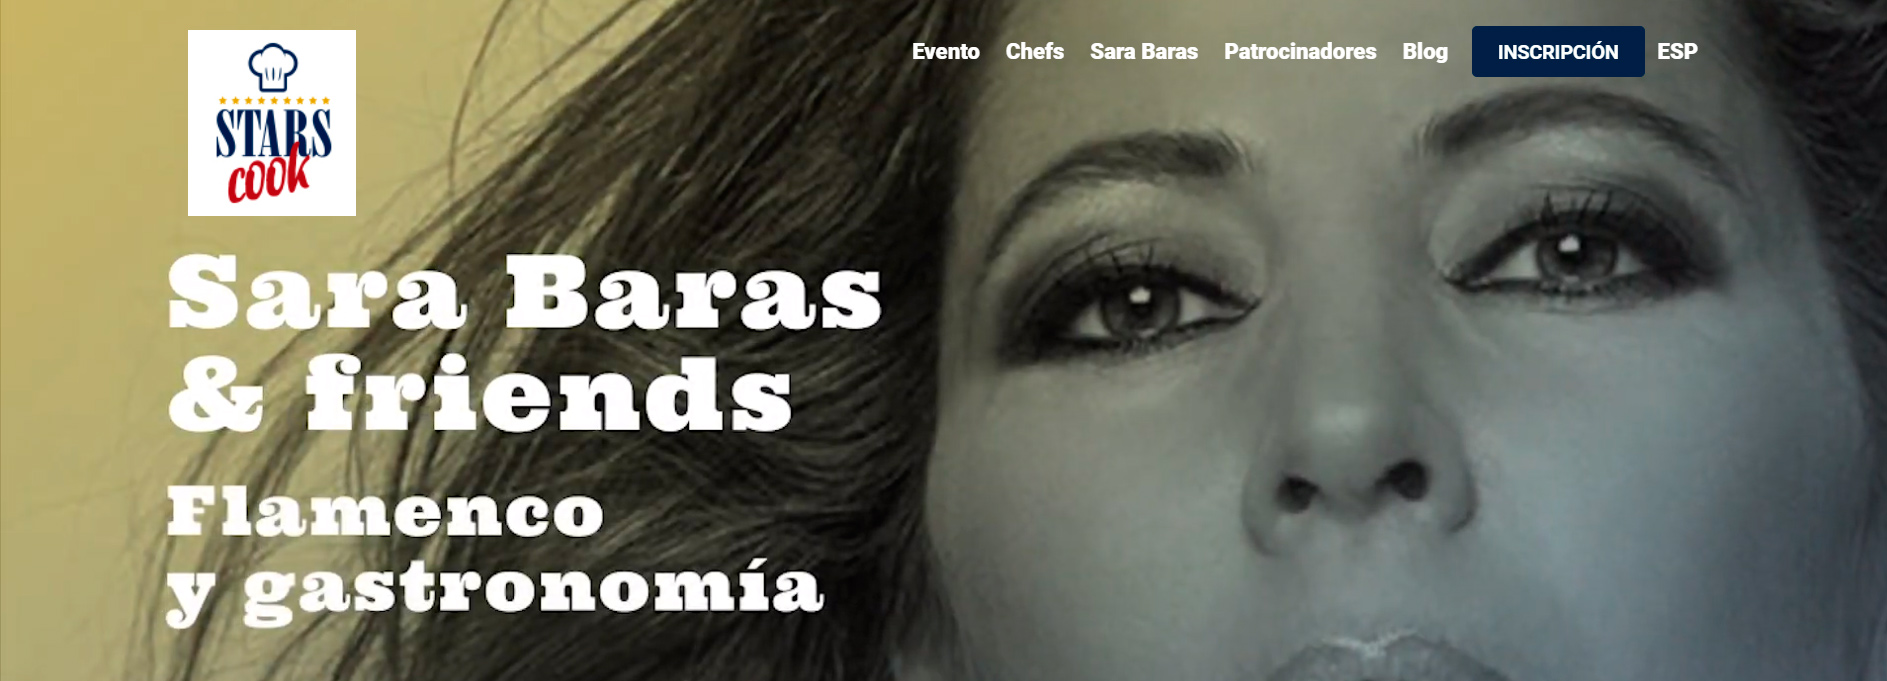 HM Hospitales - Homenaje a Sara Baras 